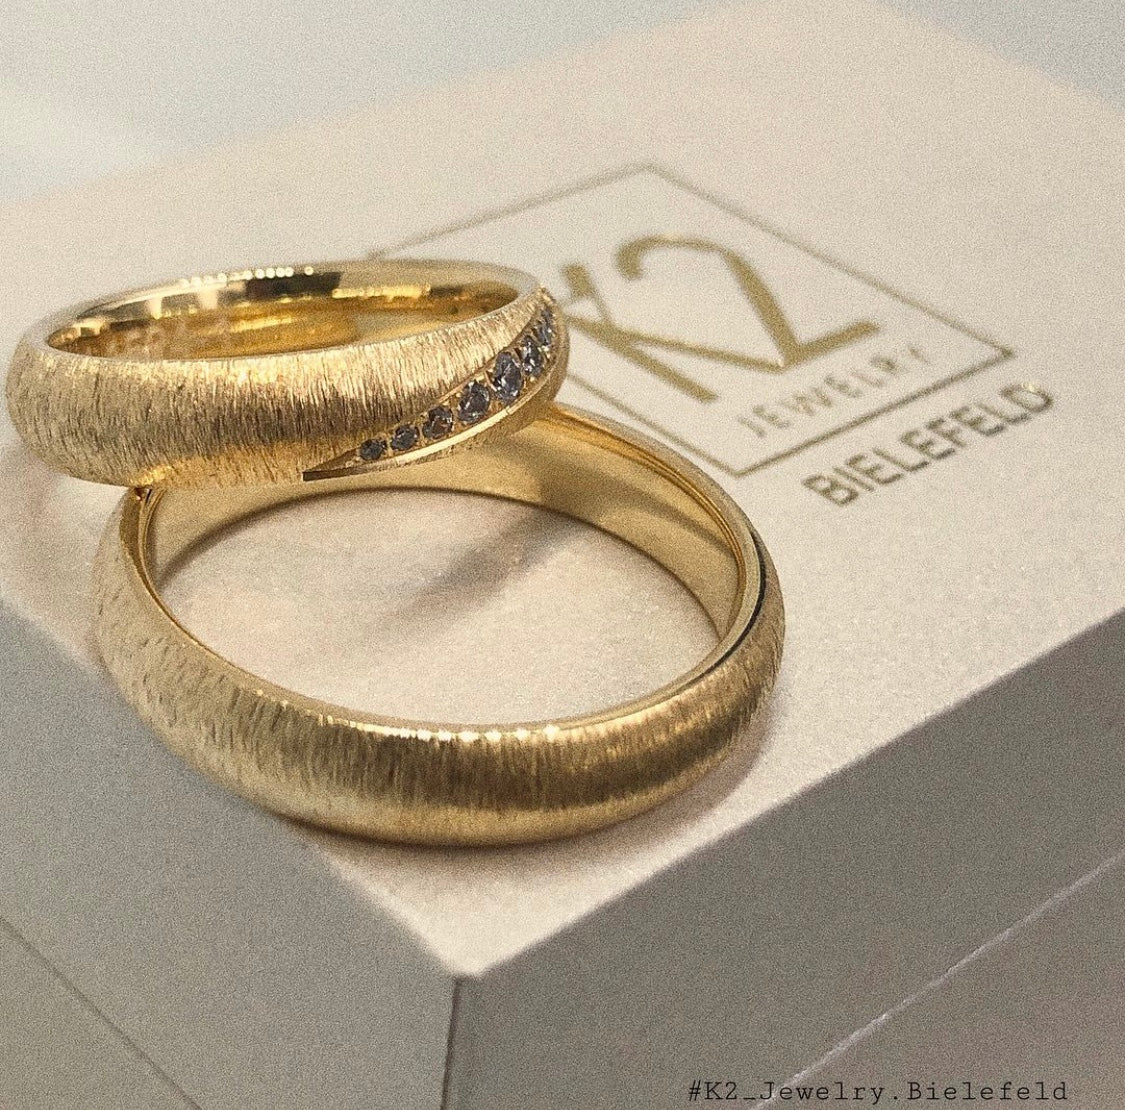 Goldene Eheringe in Bielefeld mit Diamanten die auf einer K2 Jewelry Schatulle liegen. 